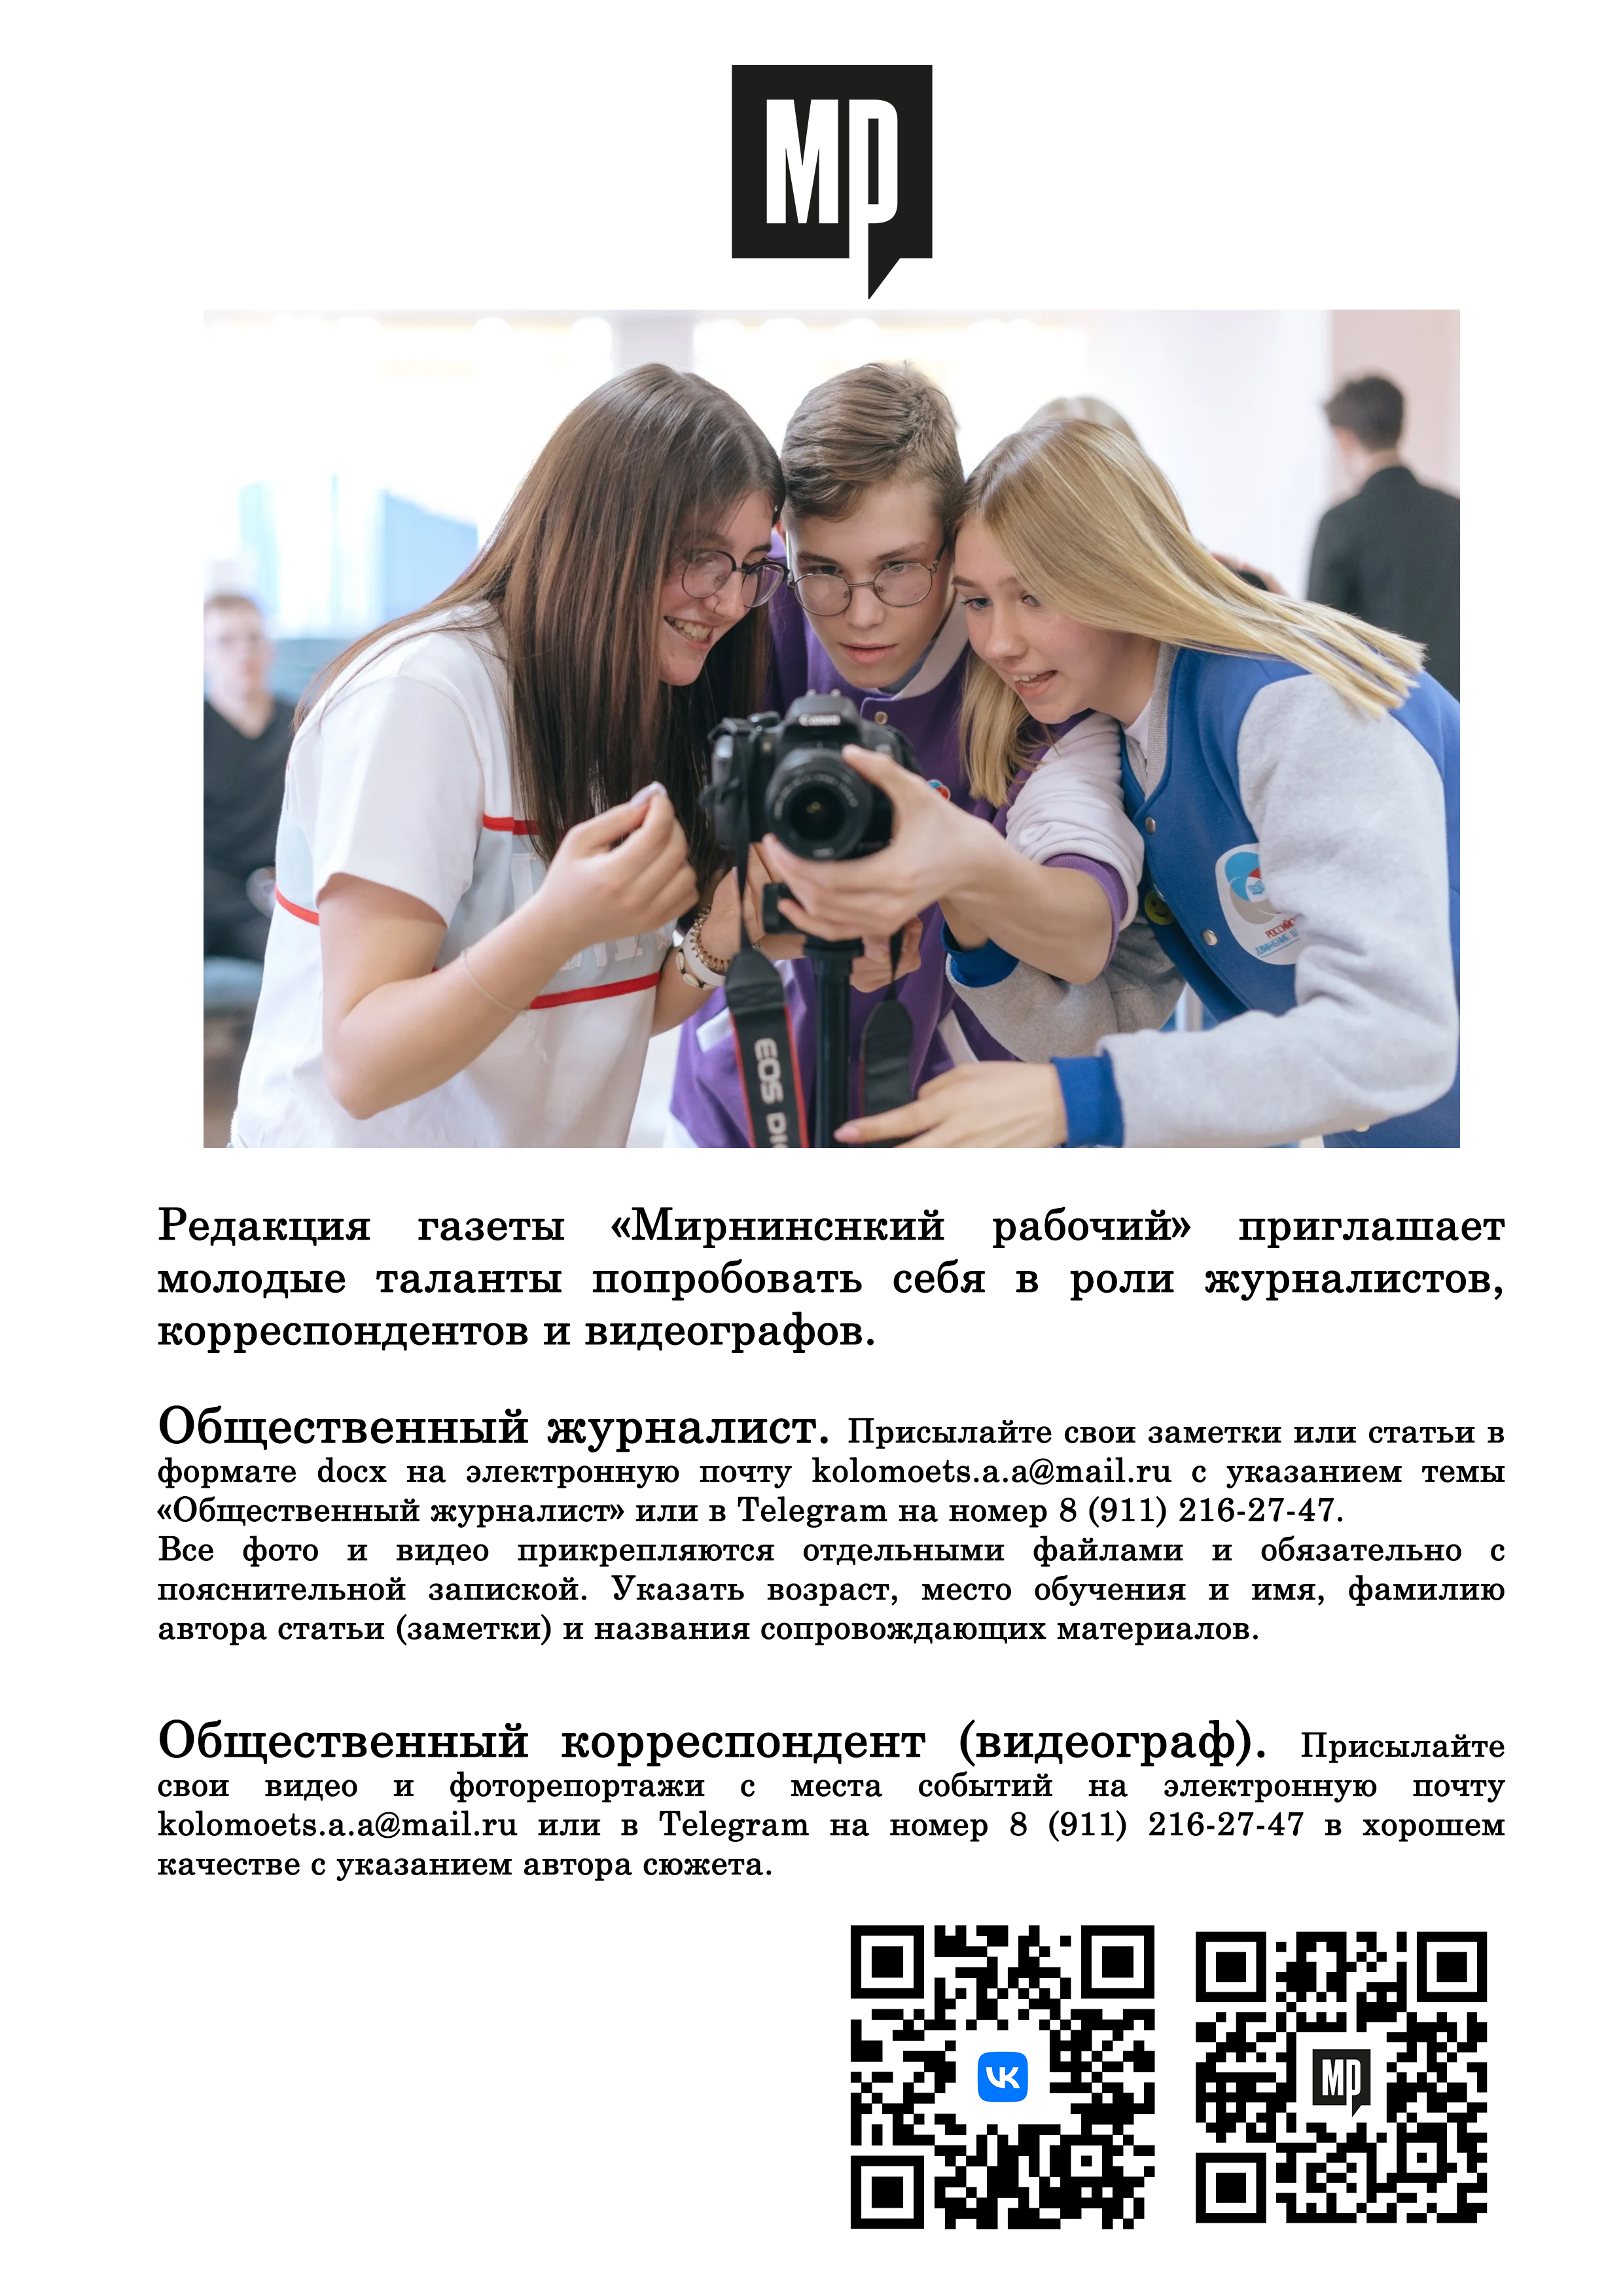 Редакция газеты «Мирнинснкий рабочий» приглашает молодые таланты попробовать себя в роли журналистов, корреспондентов и видеографов.